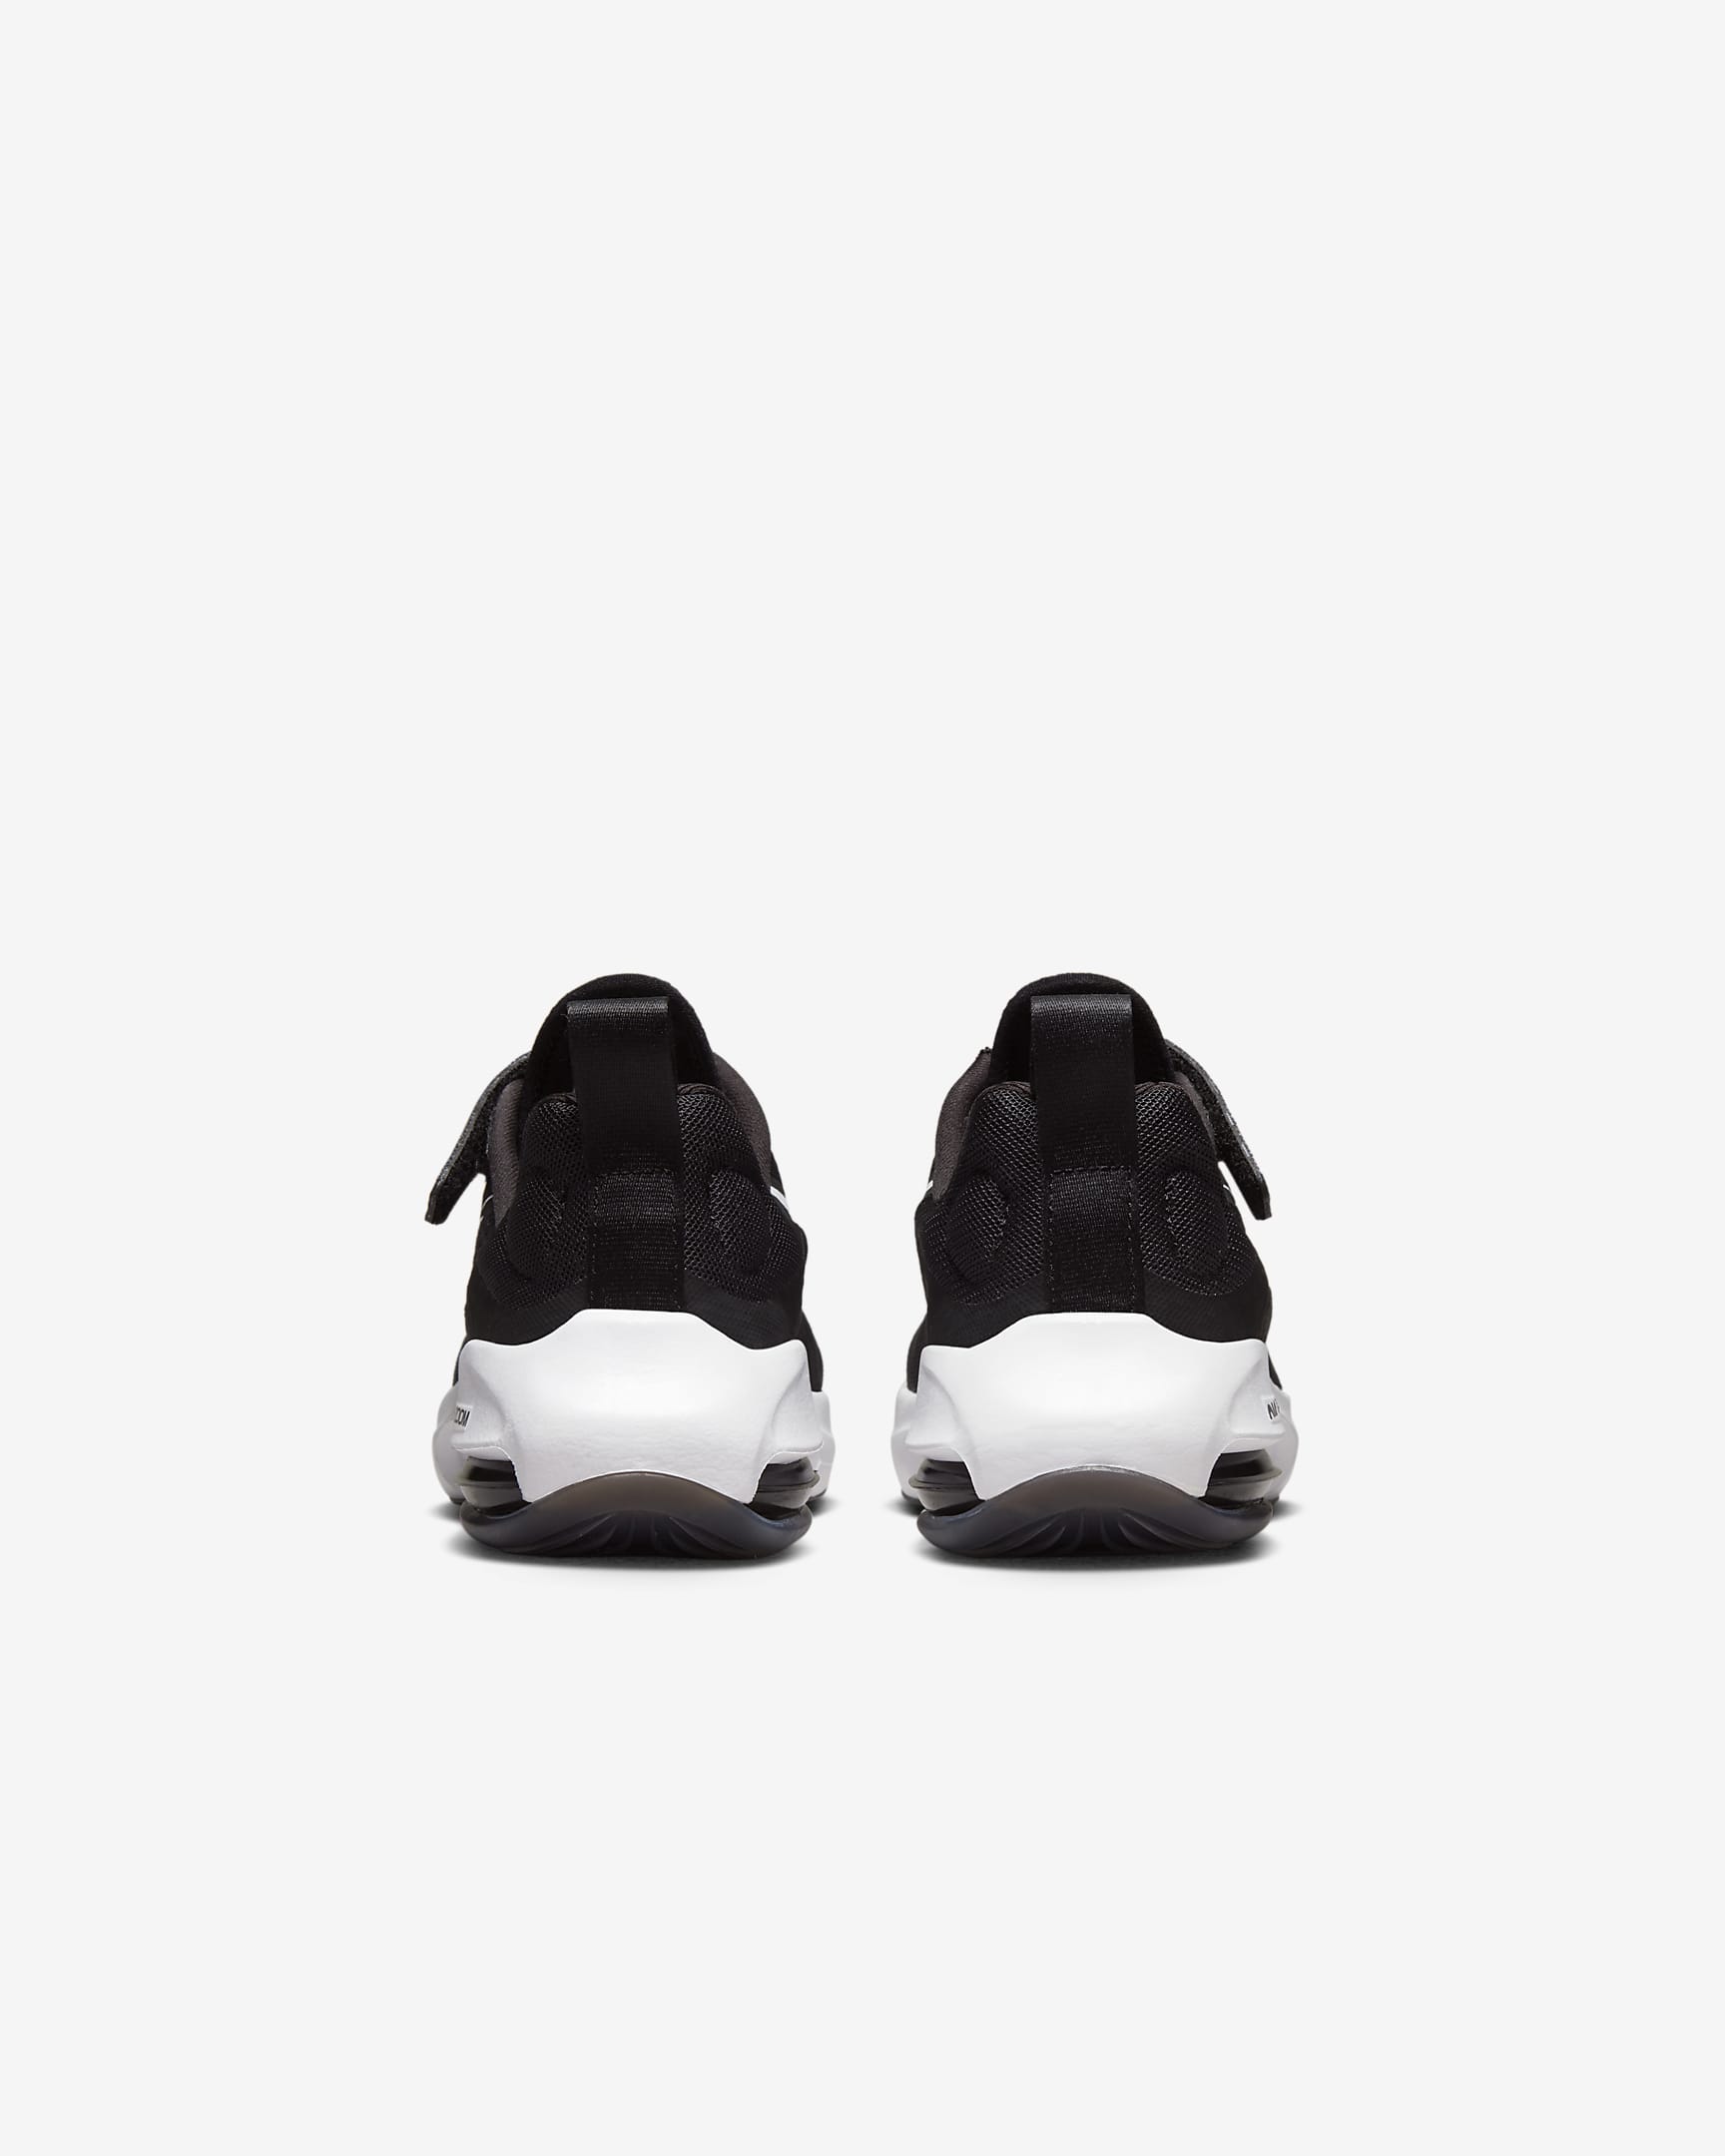 Bota Nike Air Zoom Arcadia 2 pro malé děti - Černá/Anthracite/Bílá